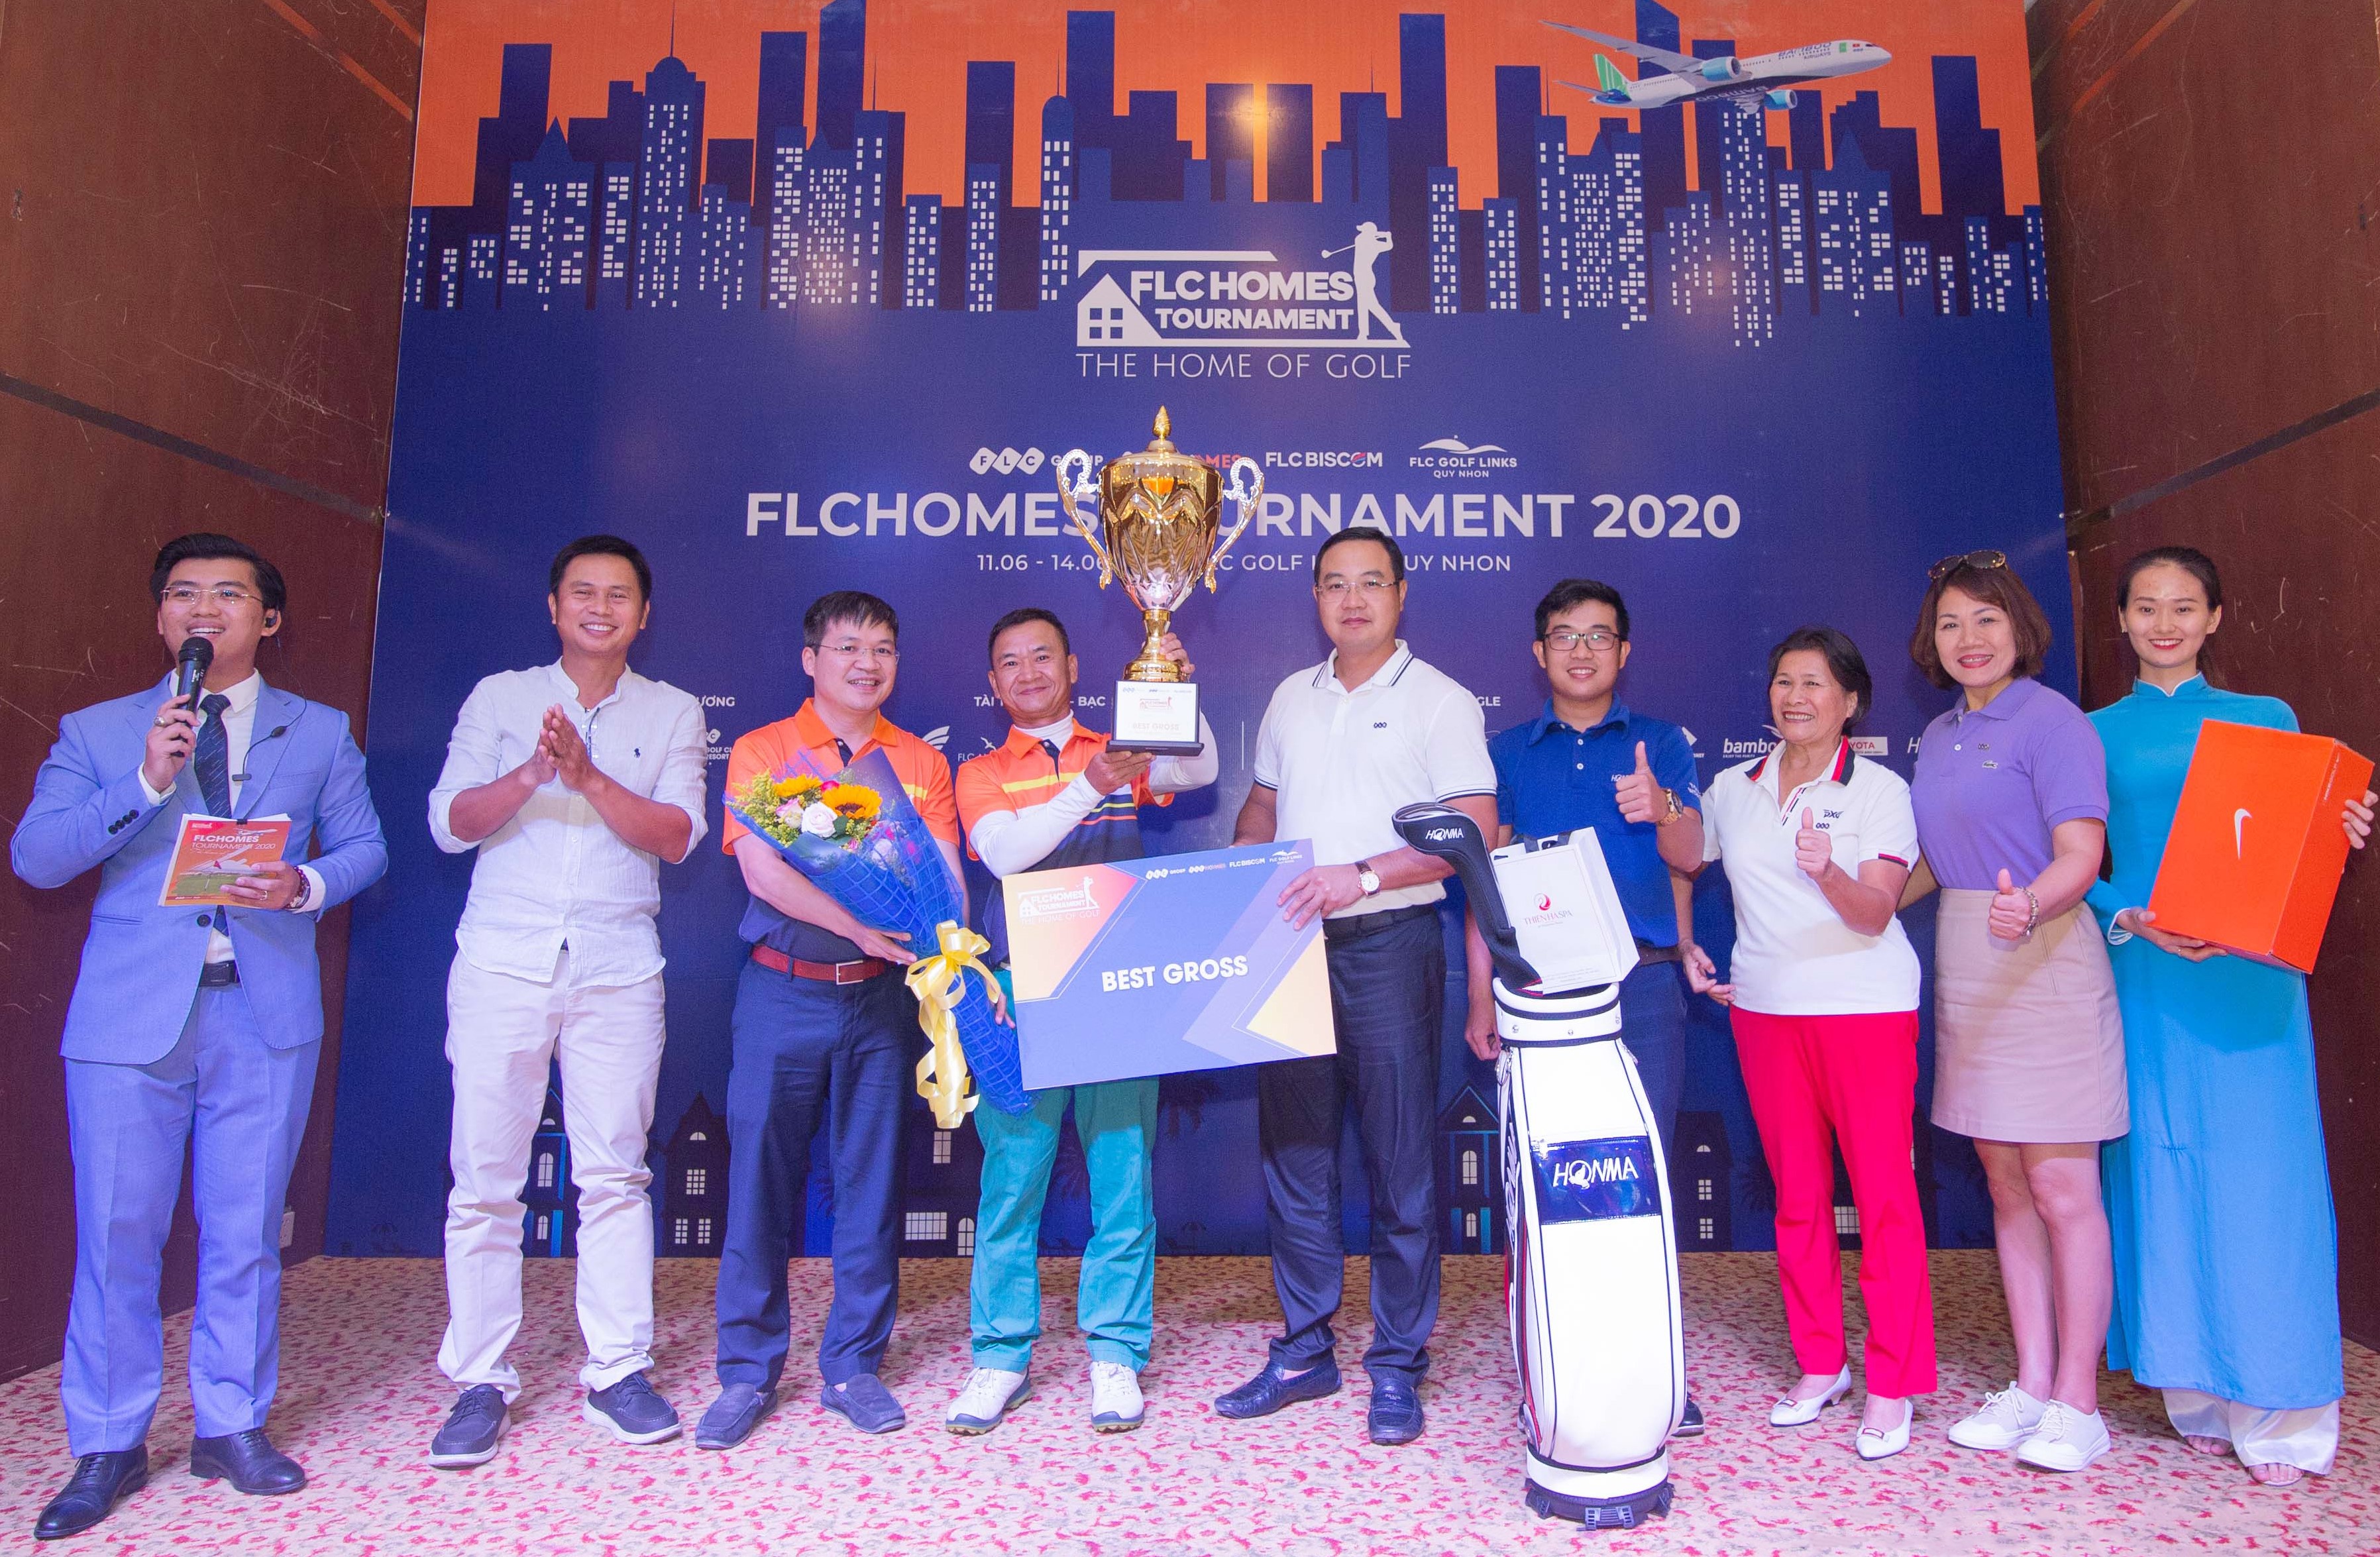 Ban tổ chức trao giải cho nhà vô địch FLCHomes Tournament 2020